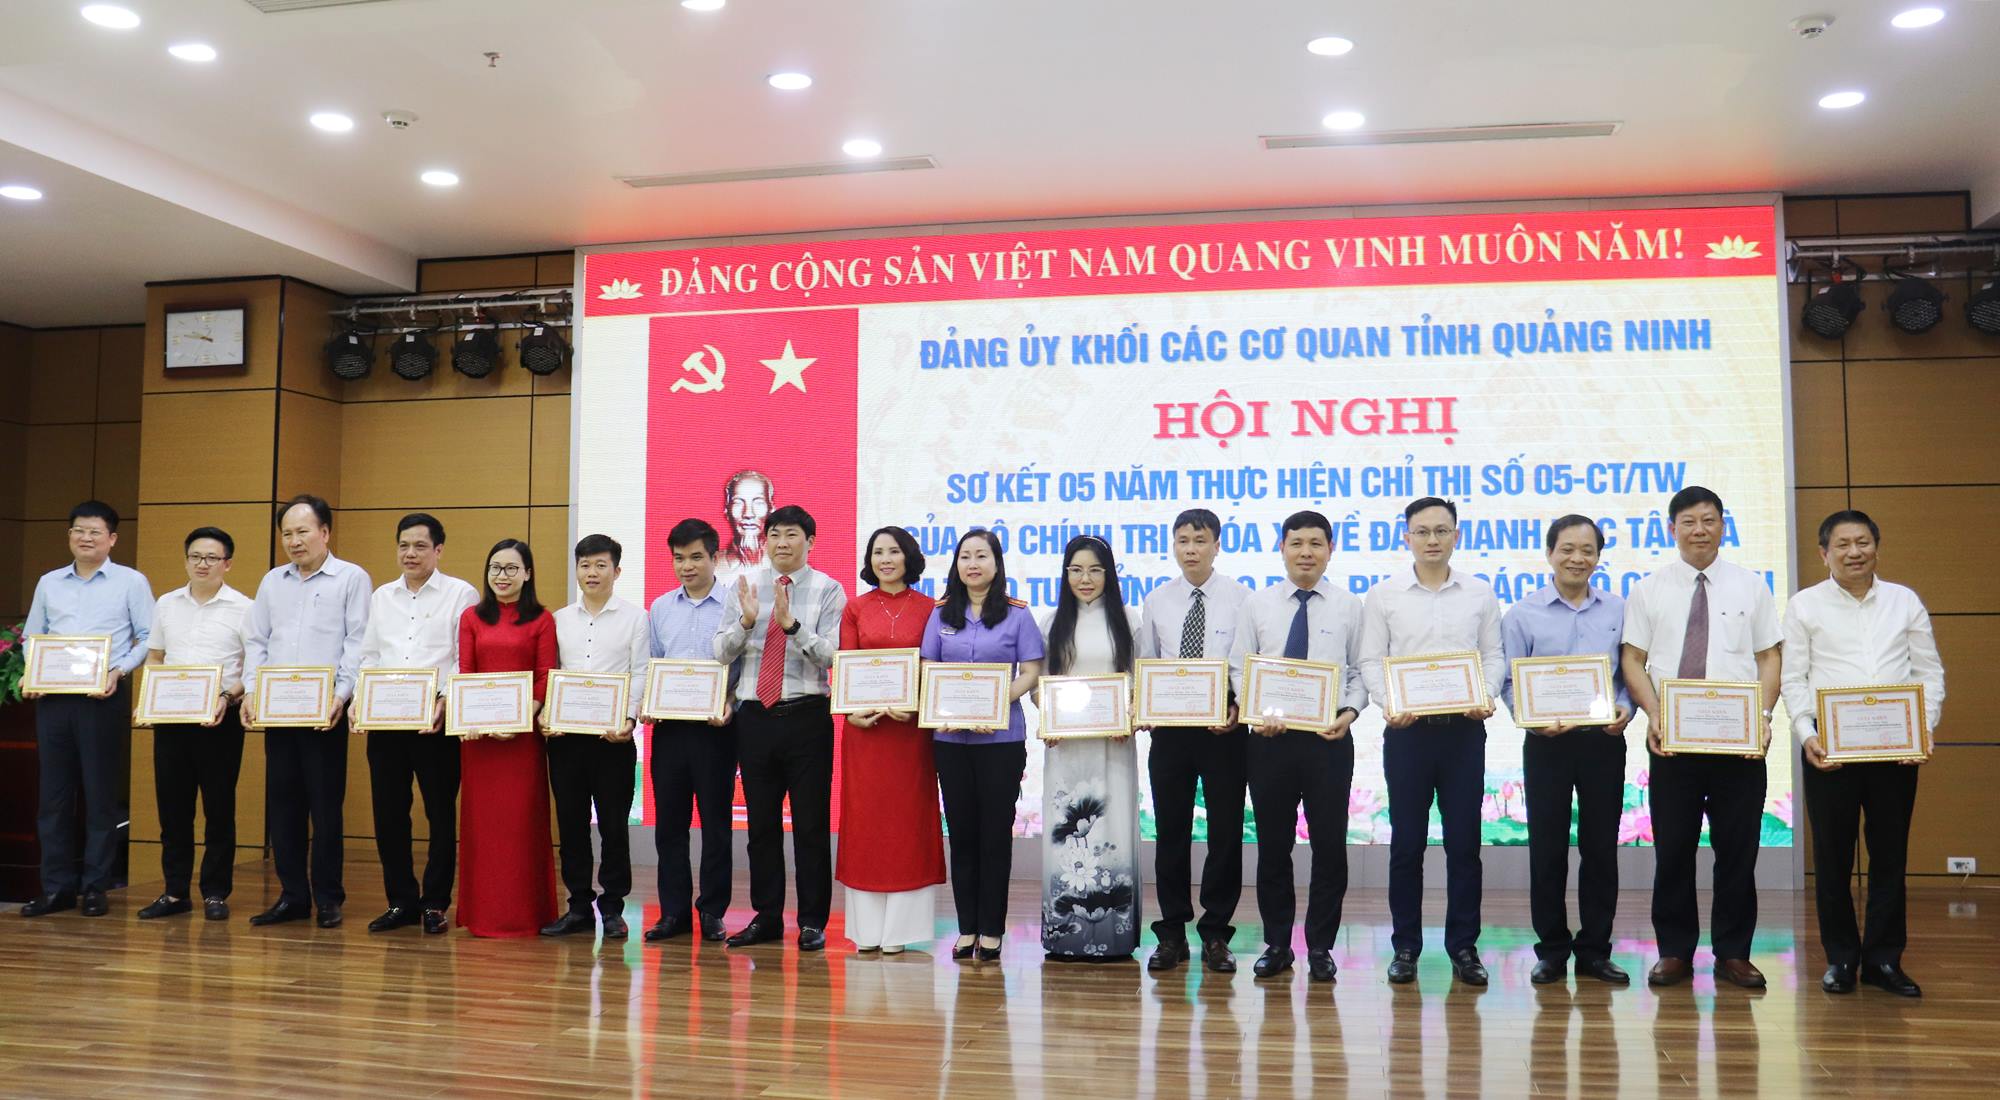 25 cá nhân có thành tích xuất sắc trong học tập và làm theo tư tưởng, đạo đức, phong cách Hồ Chí Minh giai đoạn 2016-2021 được Đảng ủy Khối các cơ quan tỉnh tặng giấy khen. 